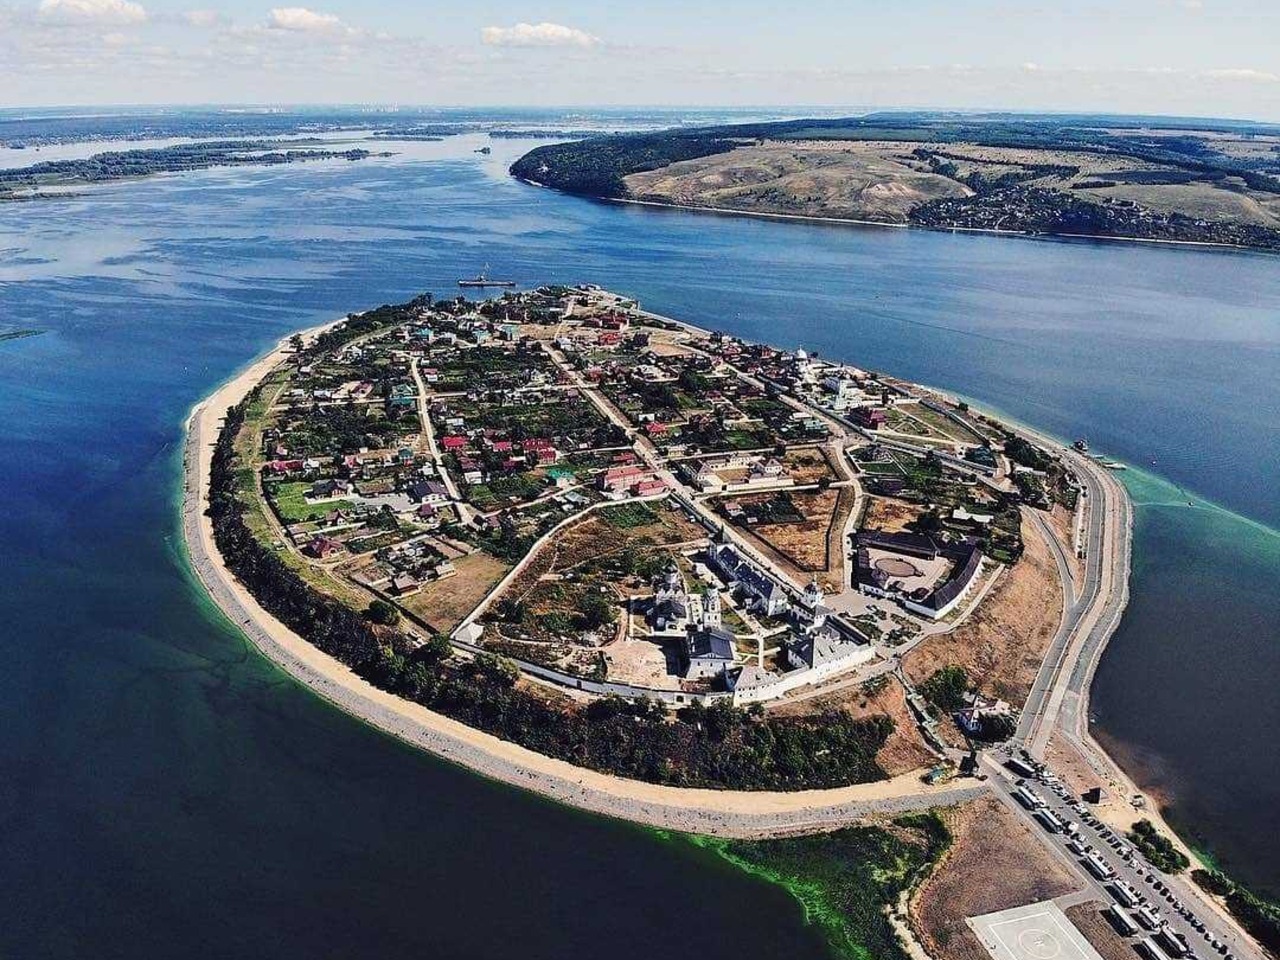 Остров-град Свияжск, над Волгой плывущий... | Цена 17500₽, отзывы, описание экскурсии